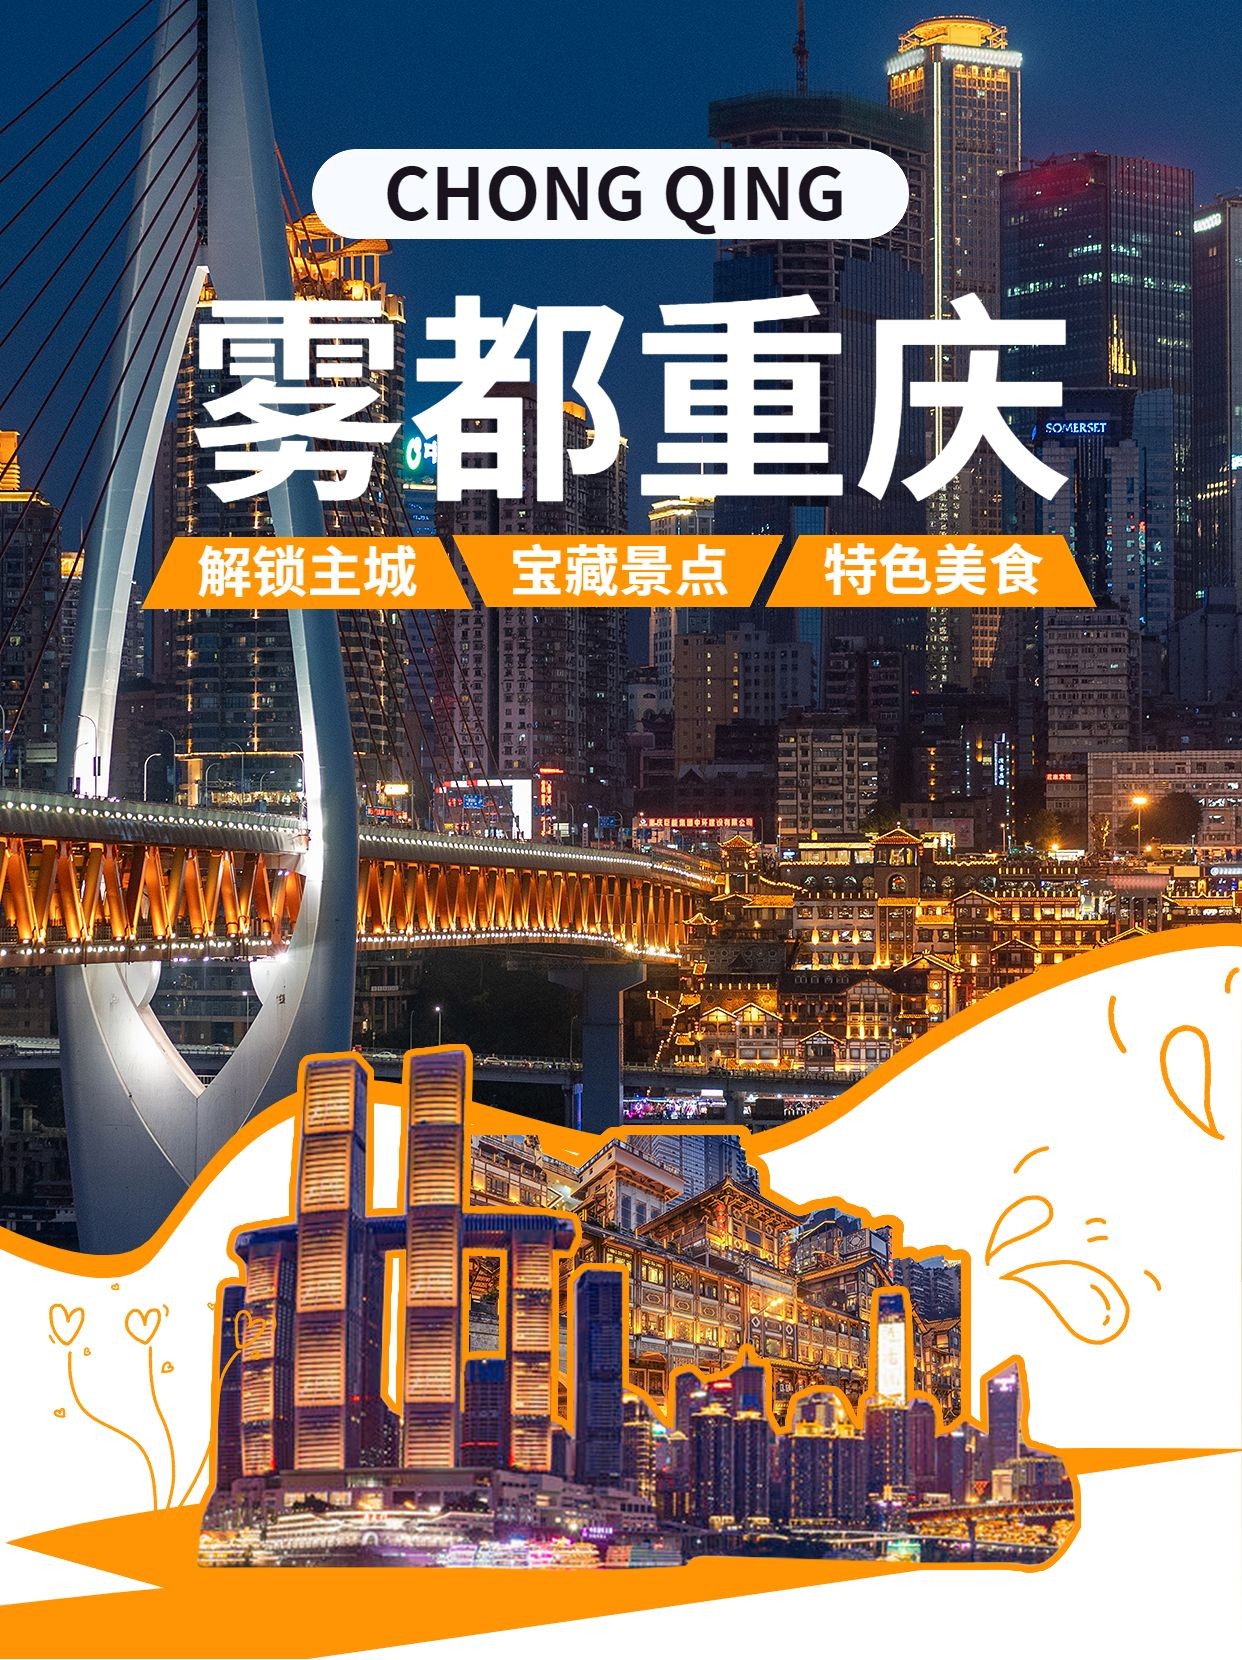 旅游出重庆景区景点推荐微信图片消息配图